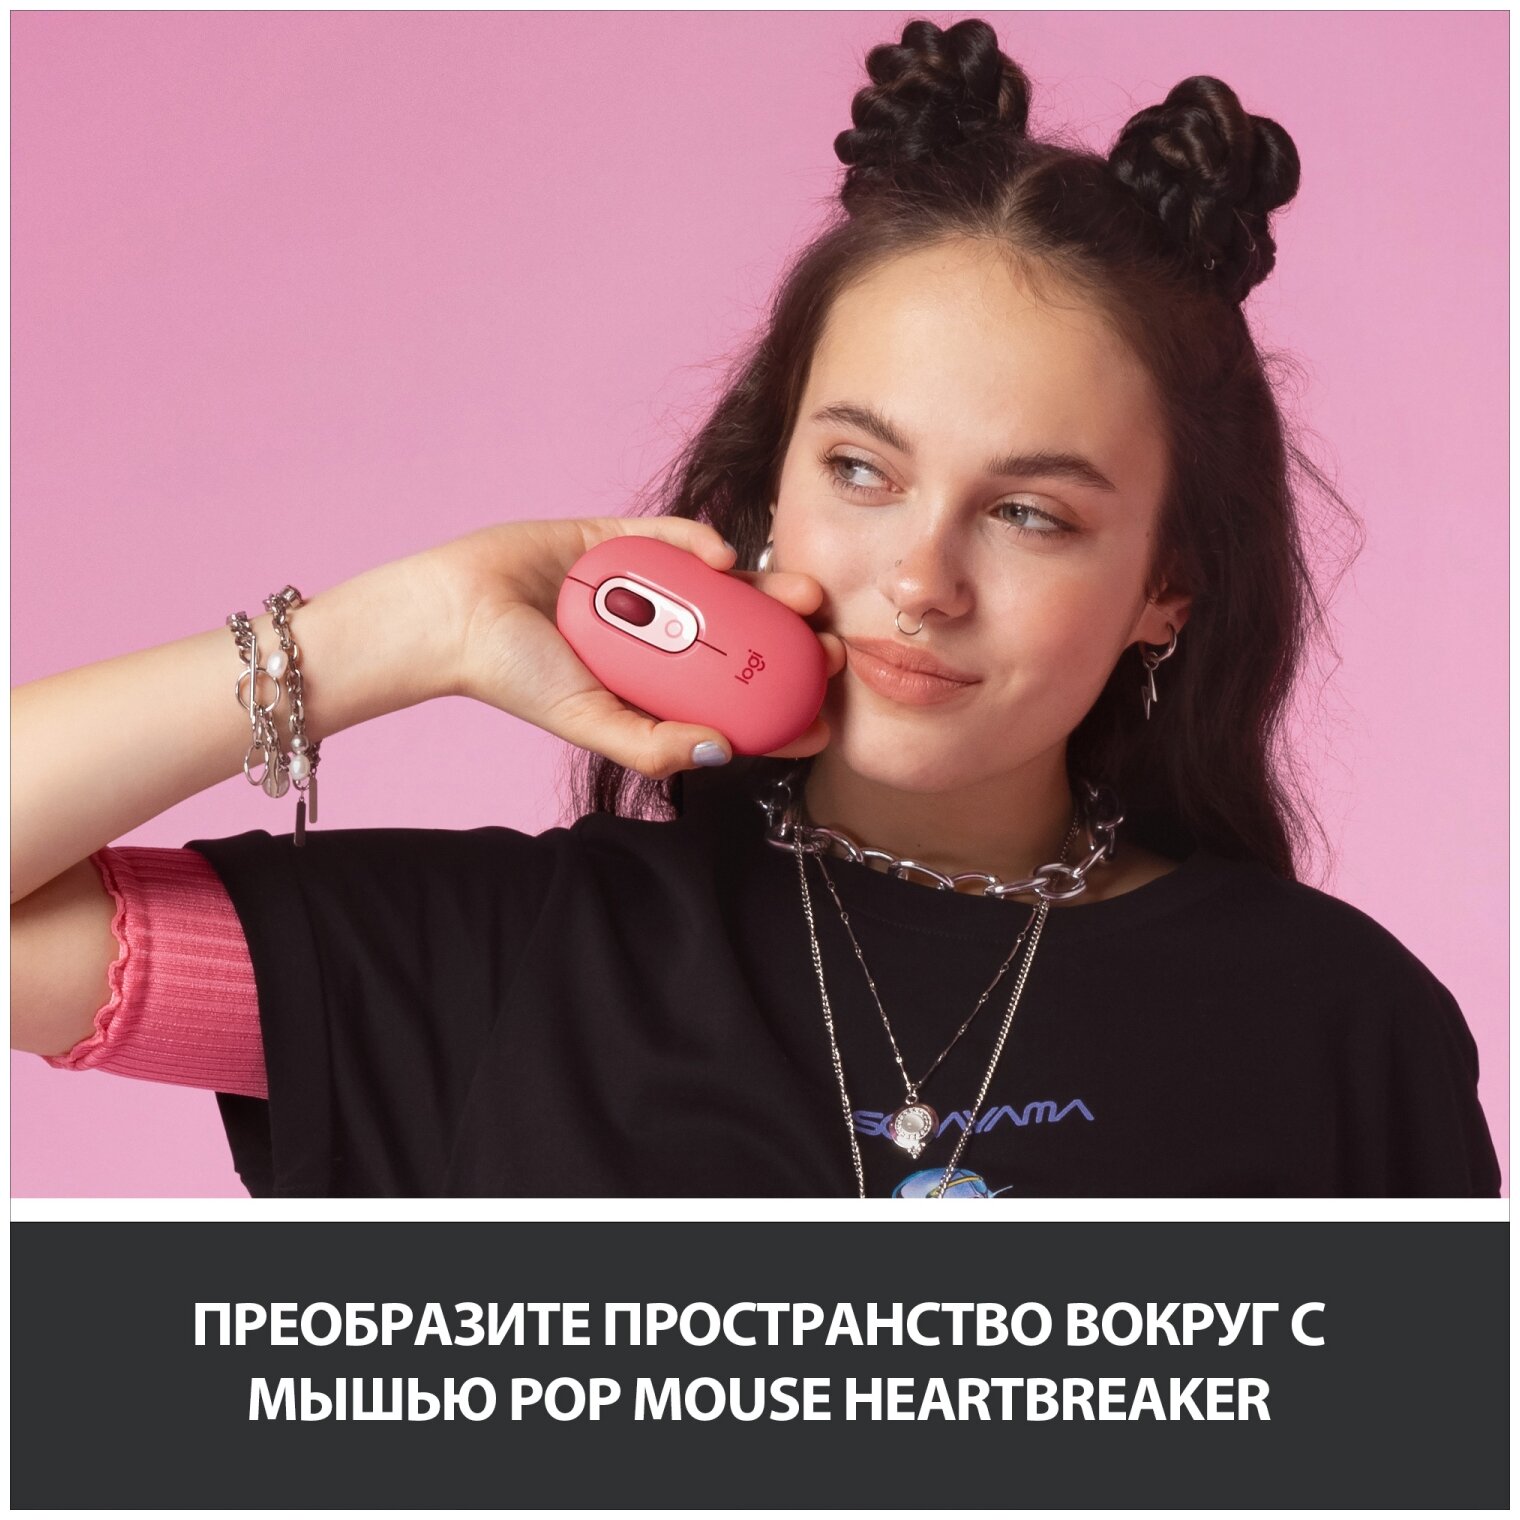 Беспроводная мышь Logitech Pop, Heartbreaker